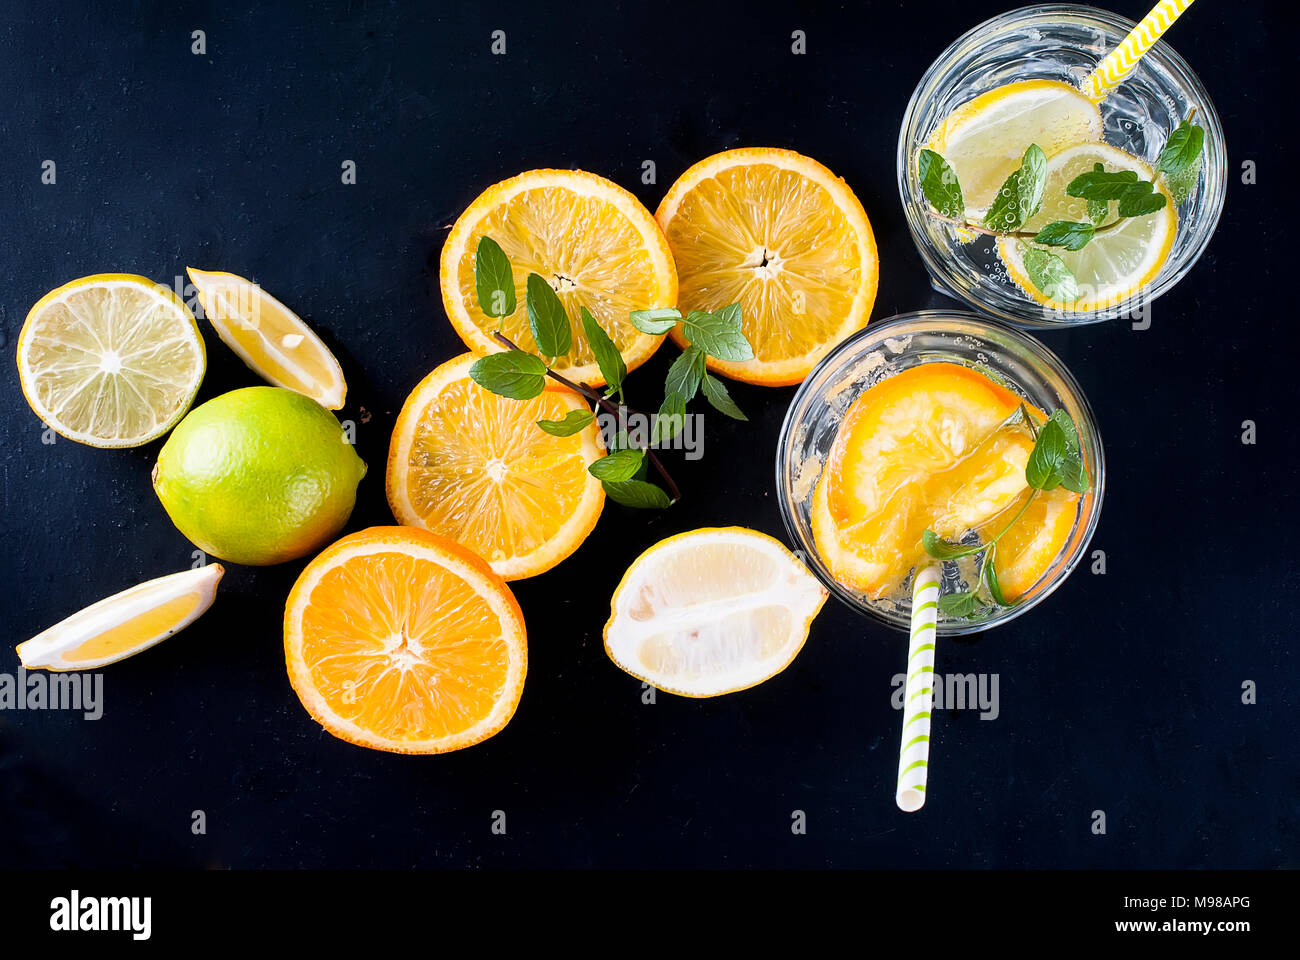 Limonade maison en verre avec de la glace, citron, orange et menthe. Ingrédients pour la limonade. Banque D'Images